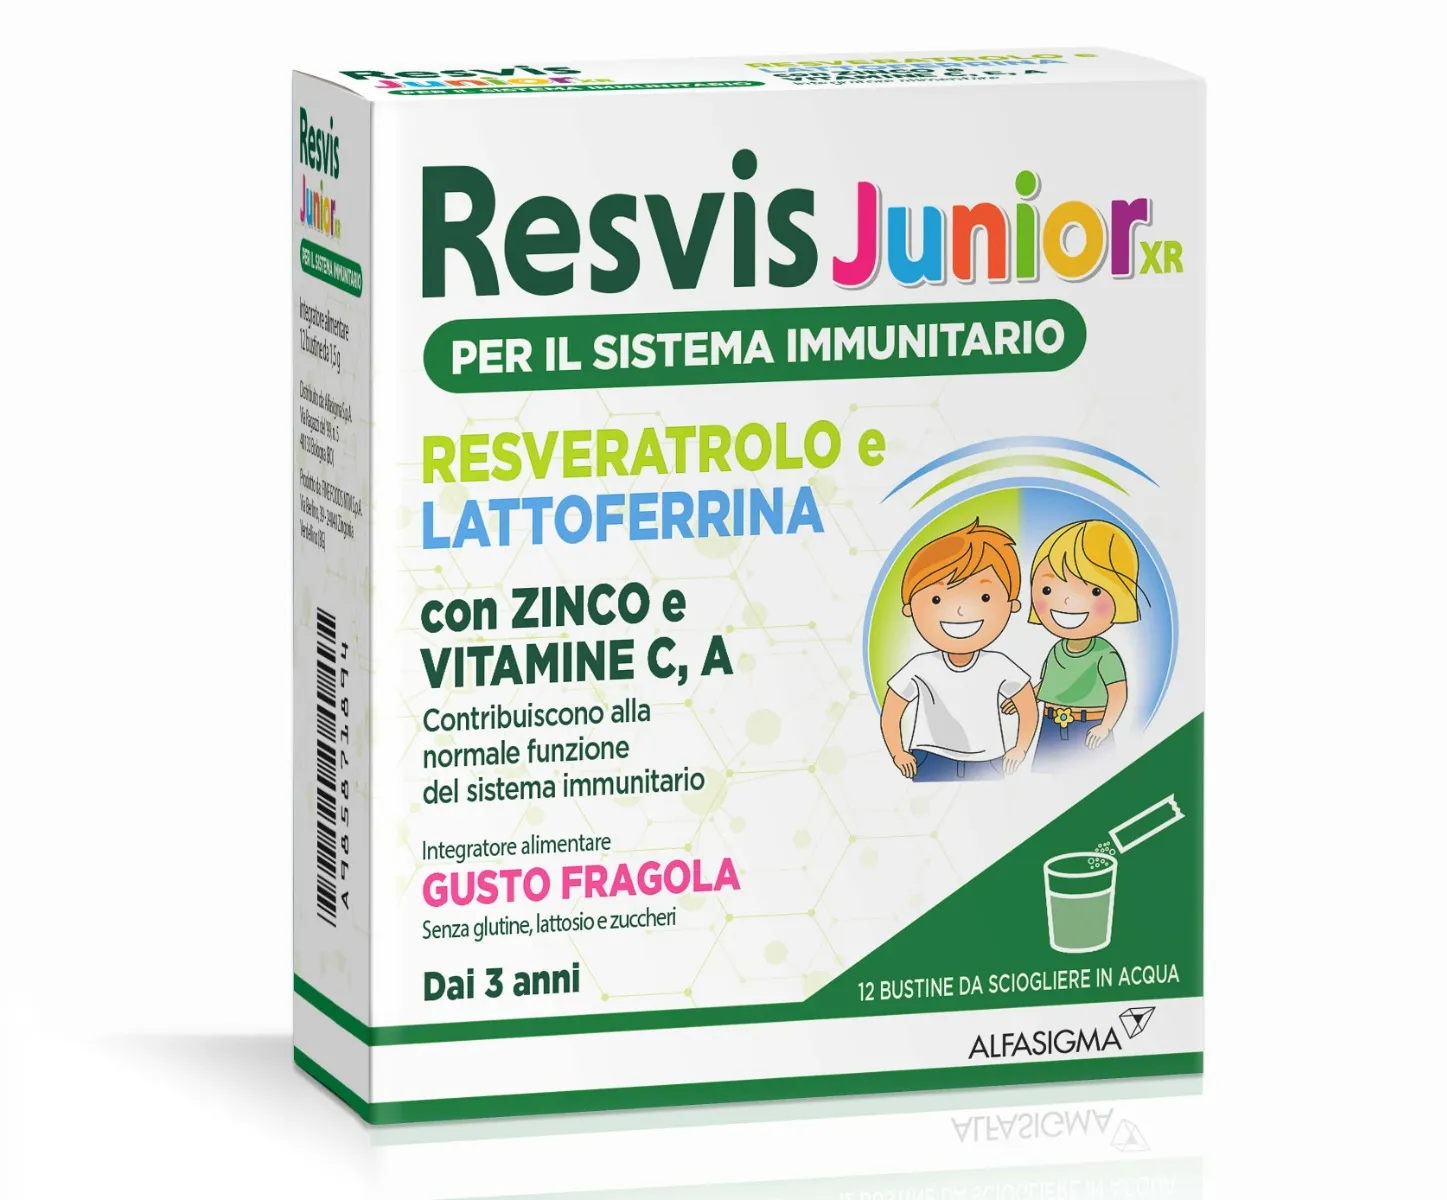 Resvis Junior XR 12 Bustine Per il Sistema Immunitario dei Bambini